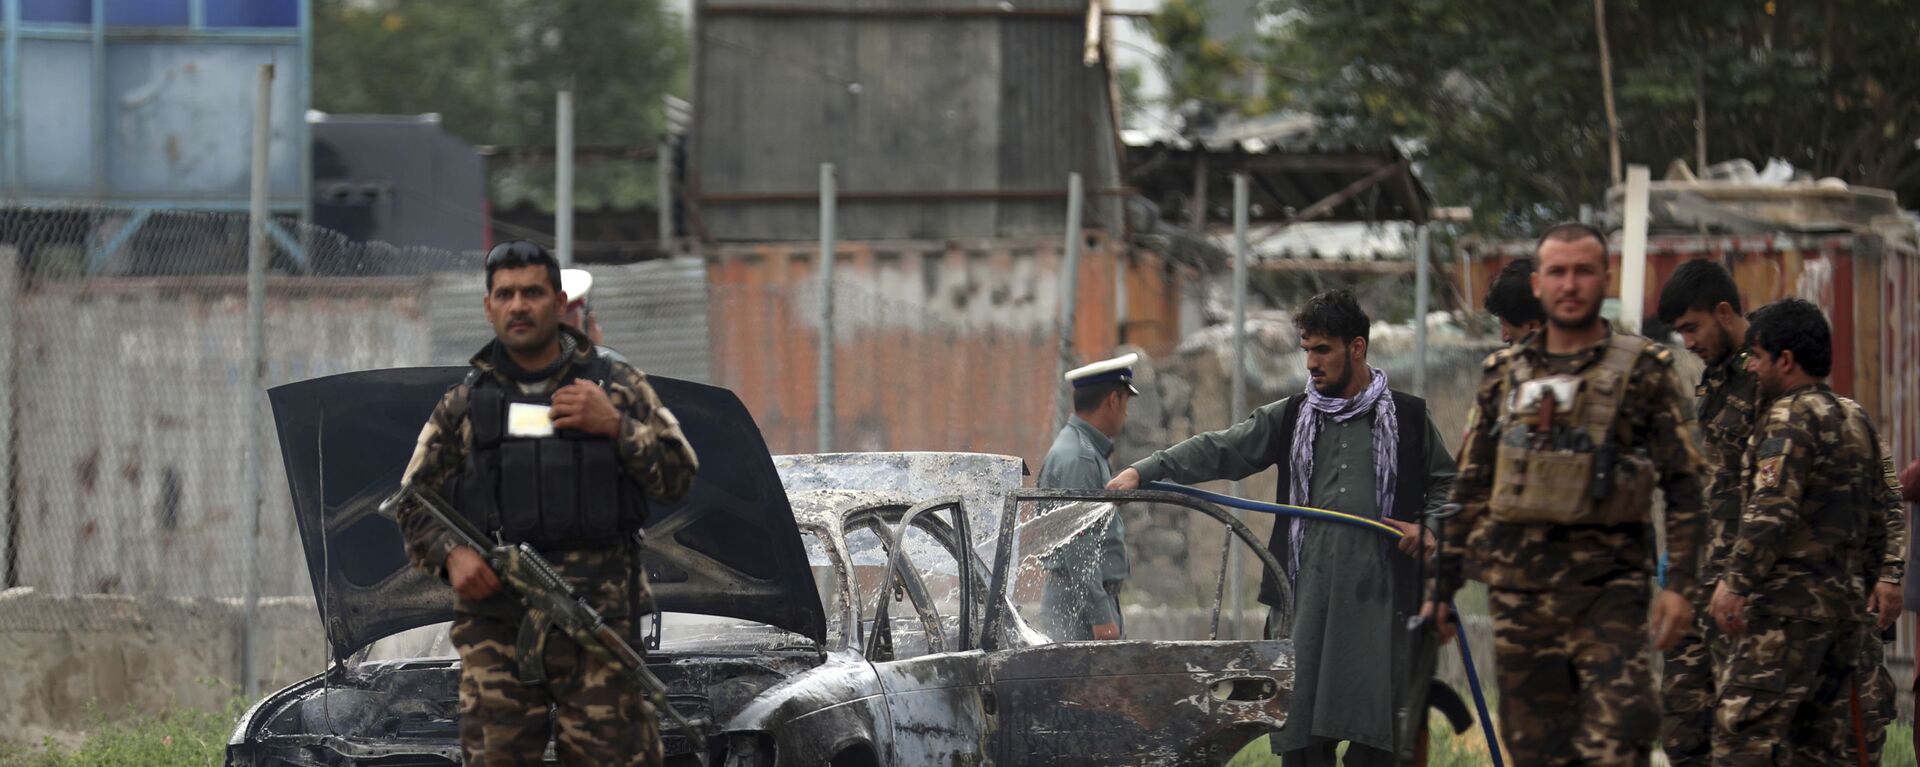 Nhân viên an ninh kiểm tra một chiếc xe bị hư hại trong cuộc pháo kích vào Kabul - Sputnik Việt Nam, 1920, 26.07.2021